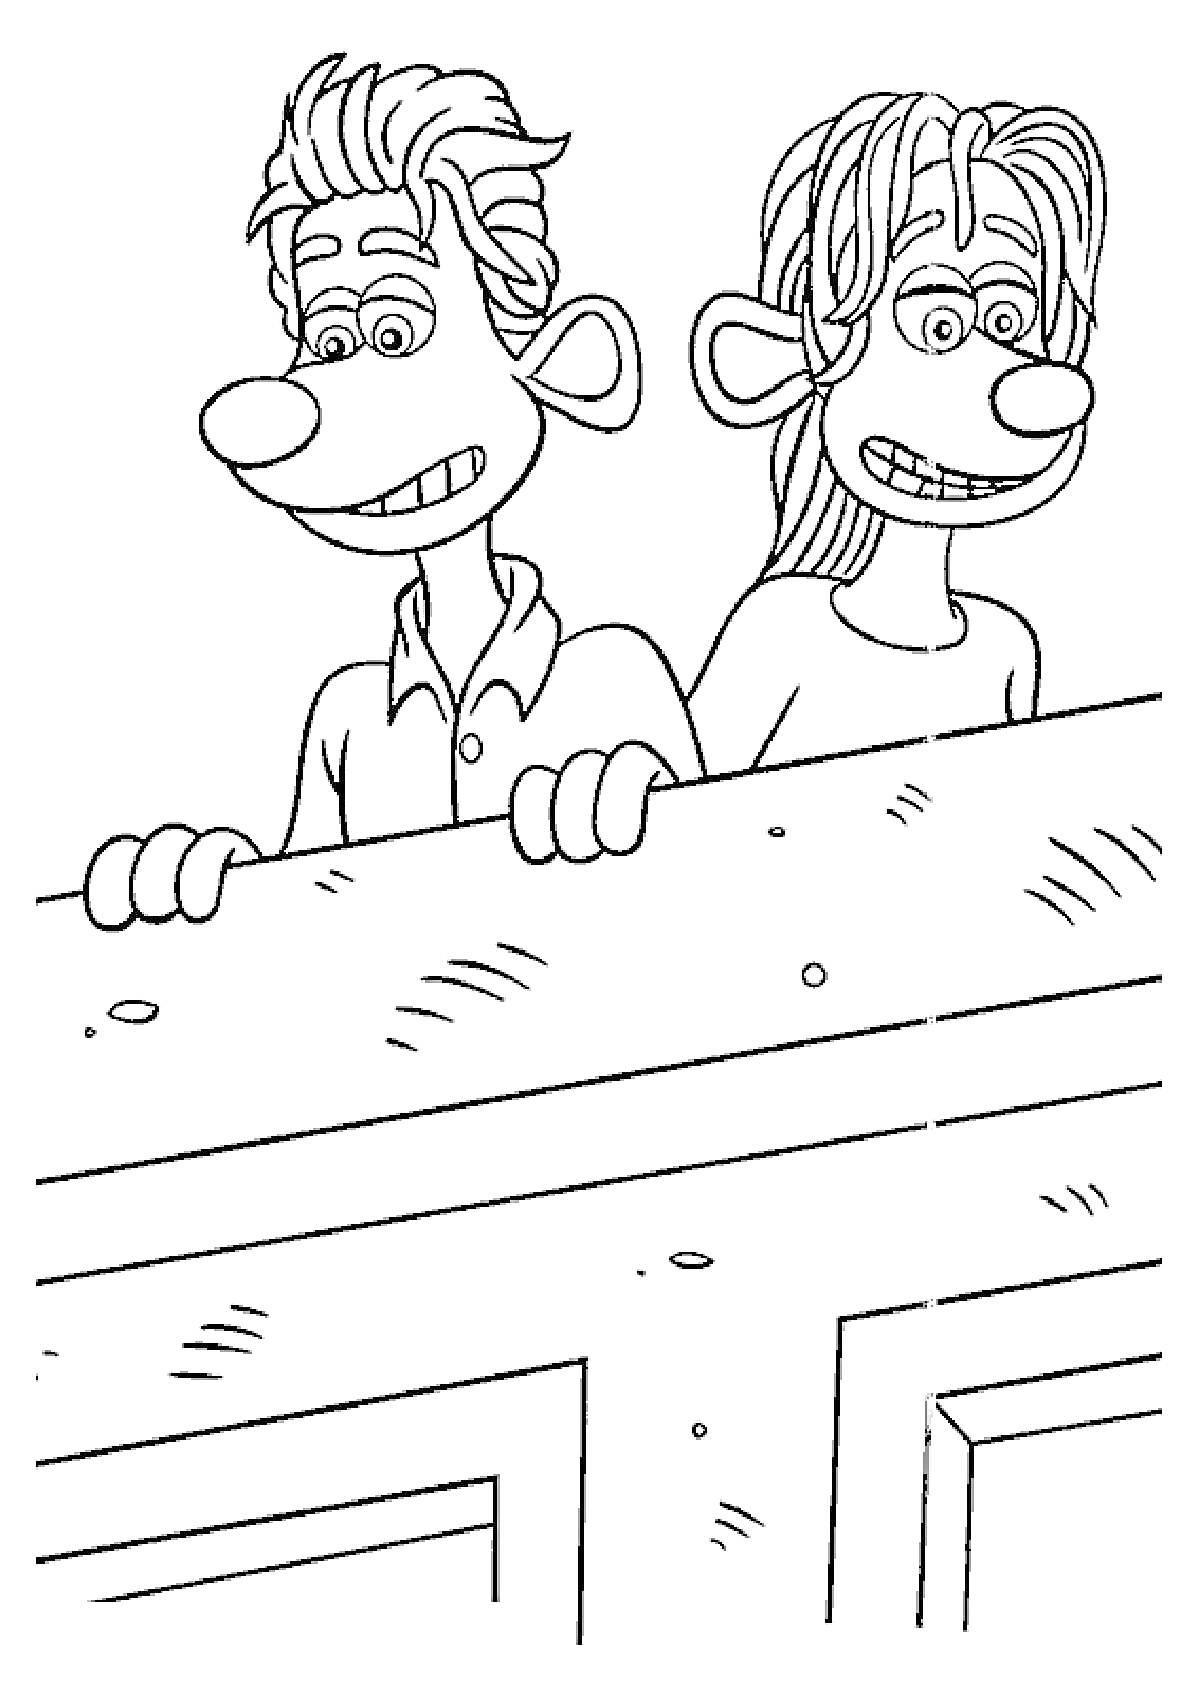 Два персонажа с большими ушами и носами за деревянным забором